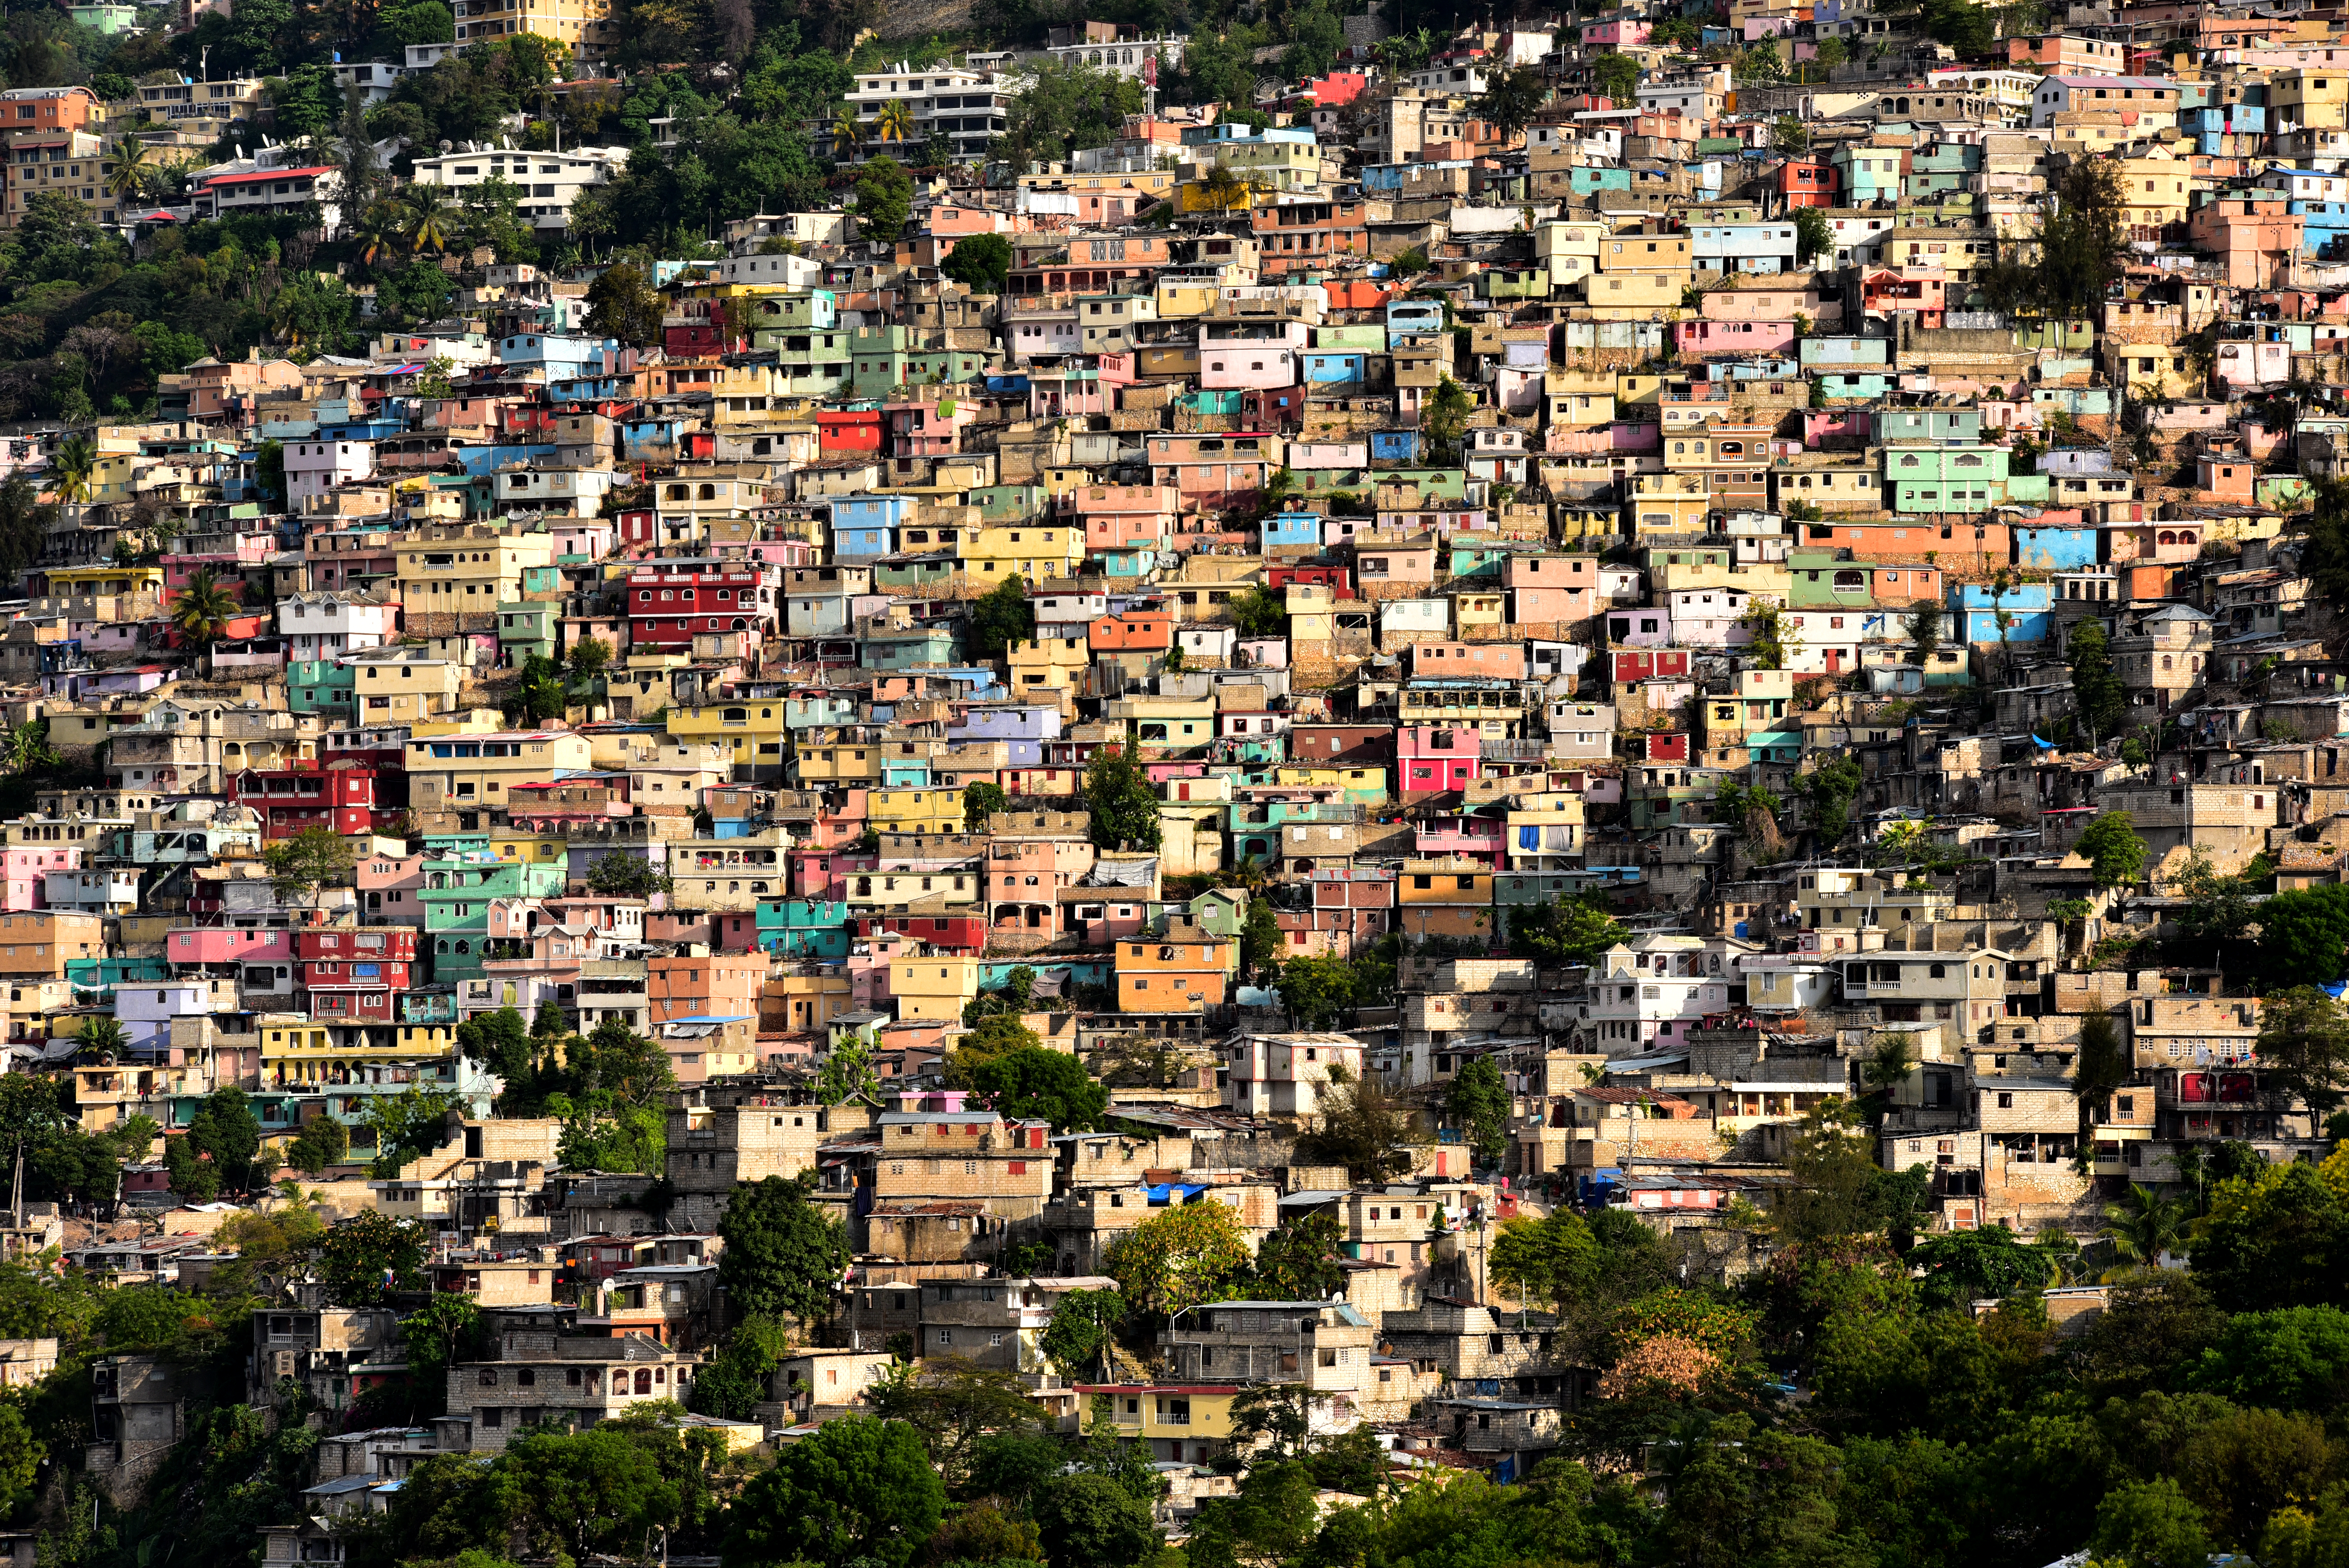 Dense housing in Port au Prince, Haiti.